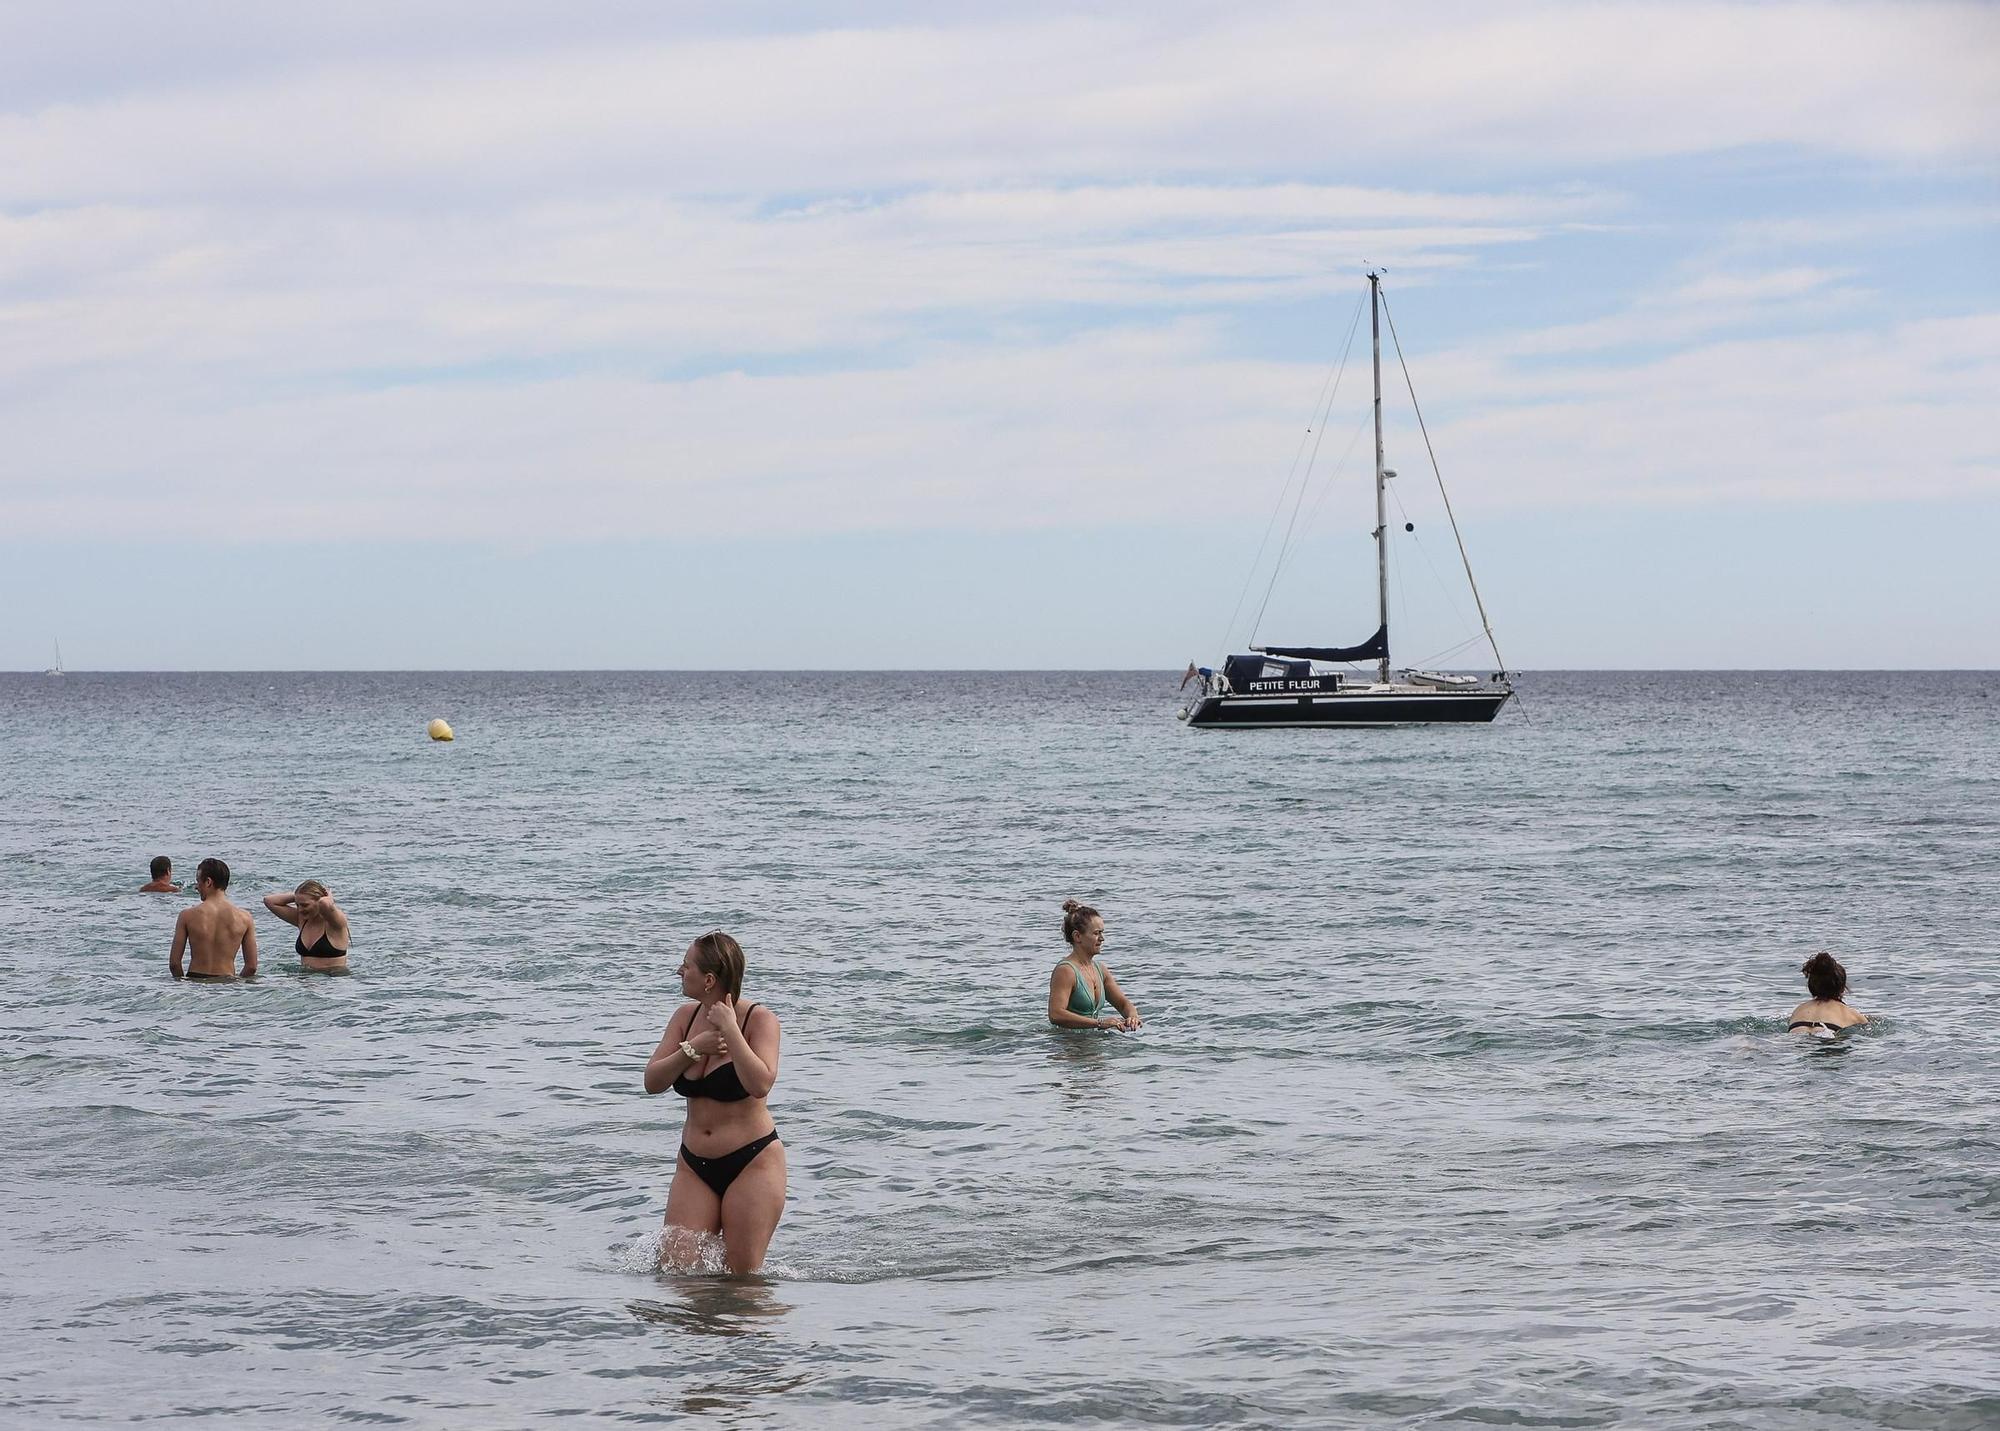 Turistas llenan las playas a causa de las altas temperaturas